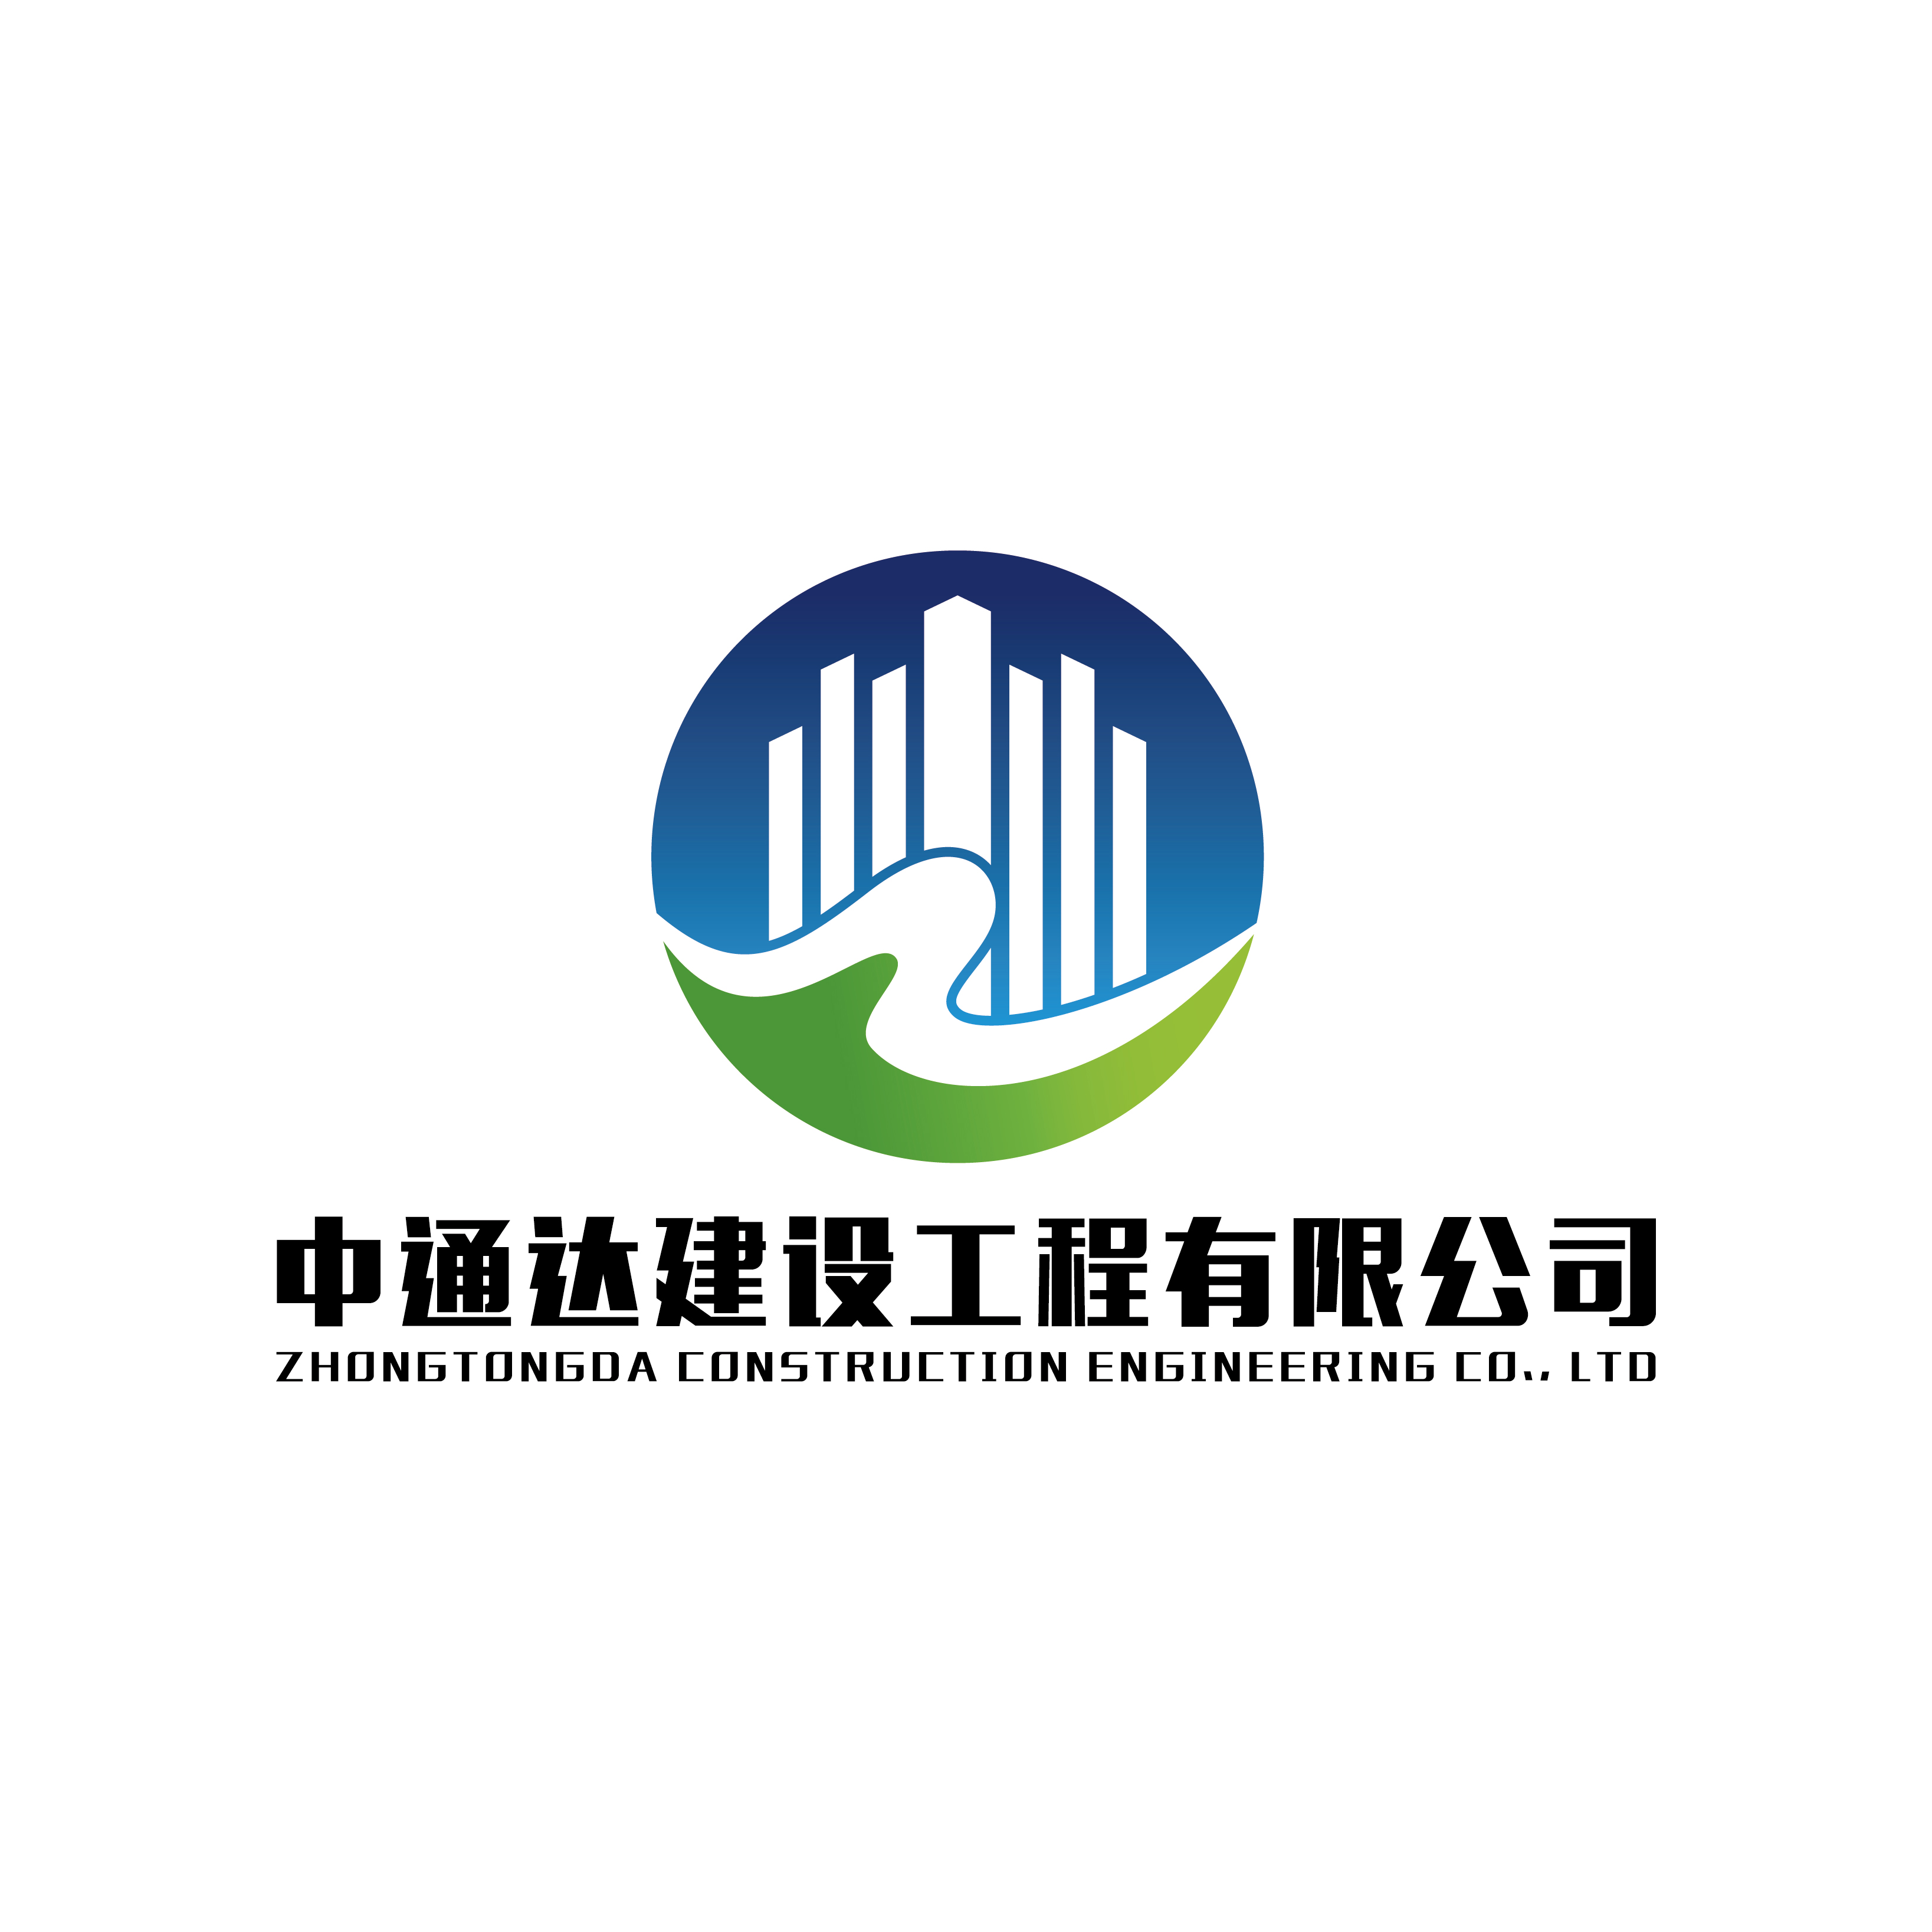 贵州中通达建设工程有限公司内蒙古分公司